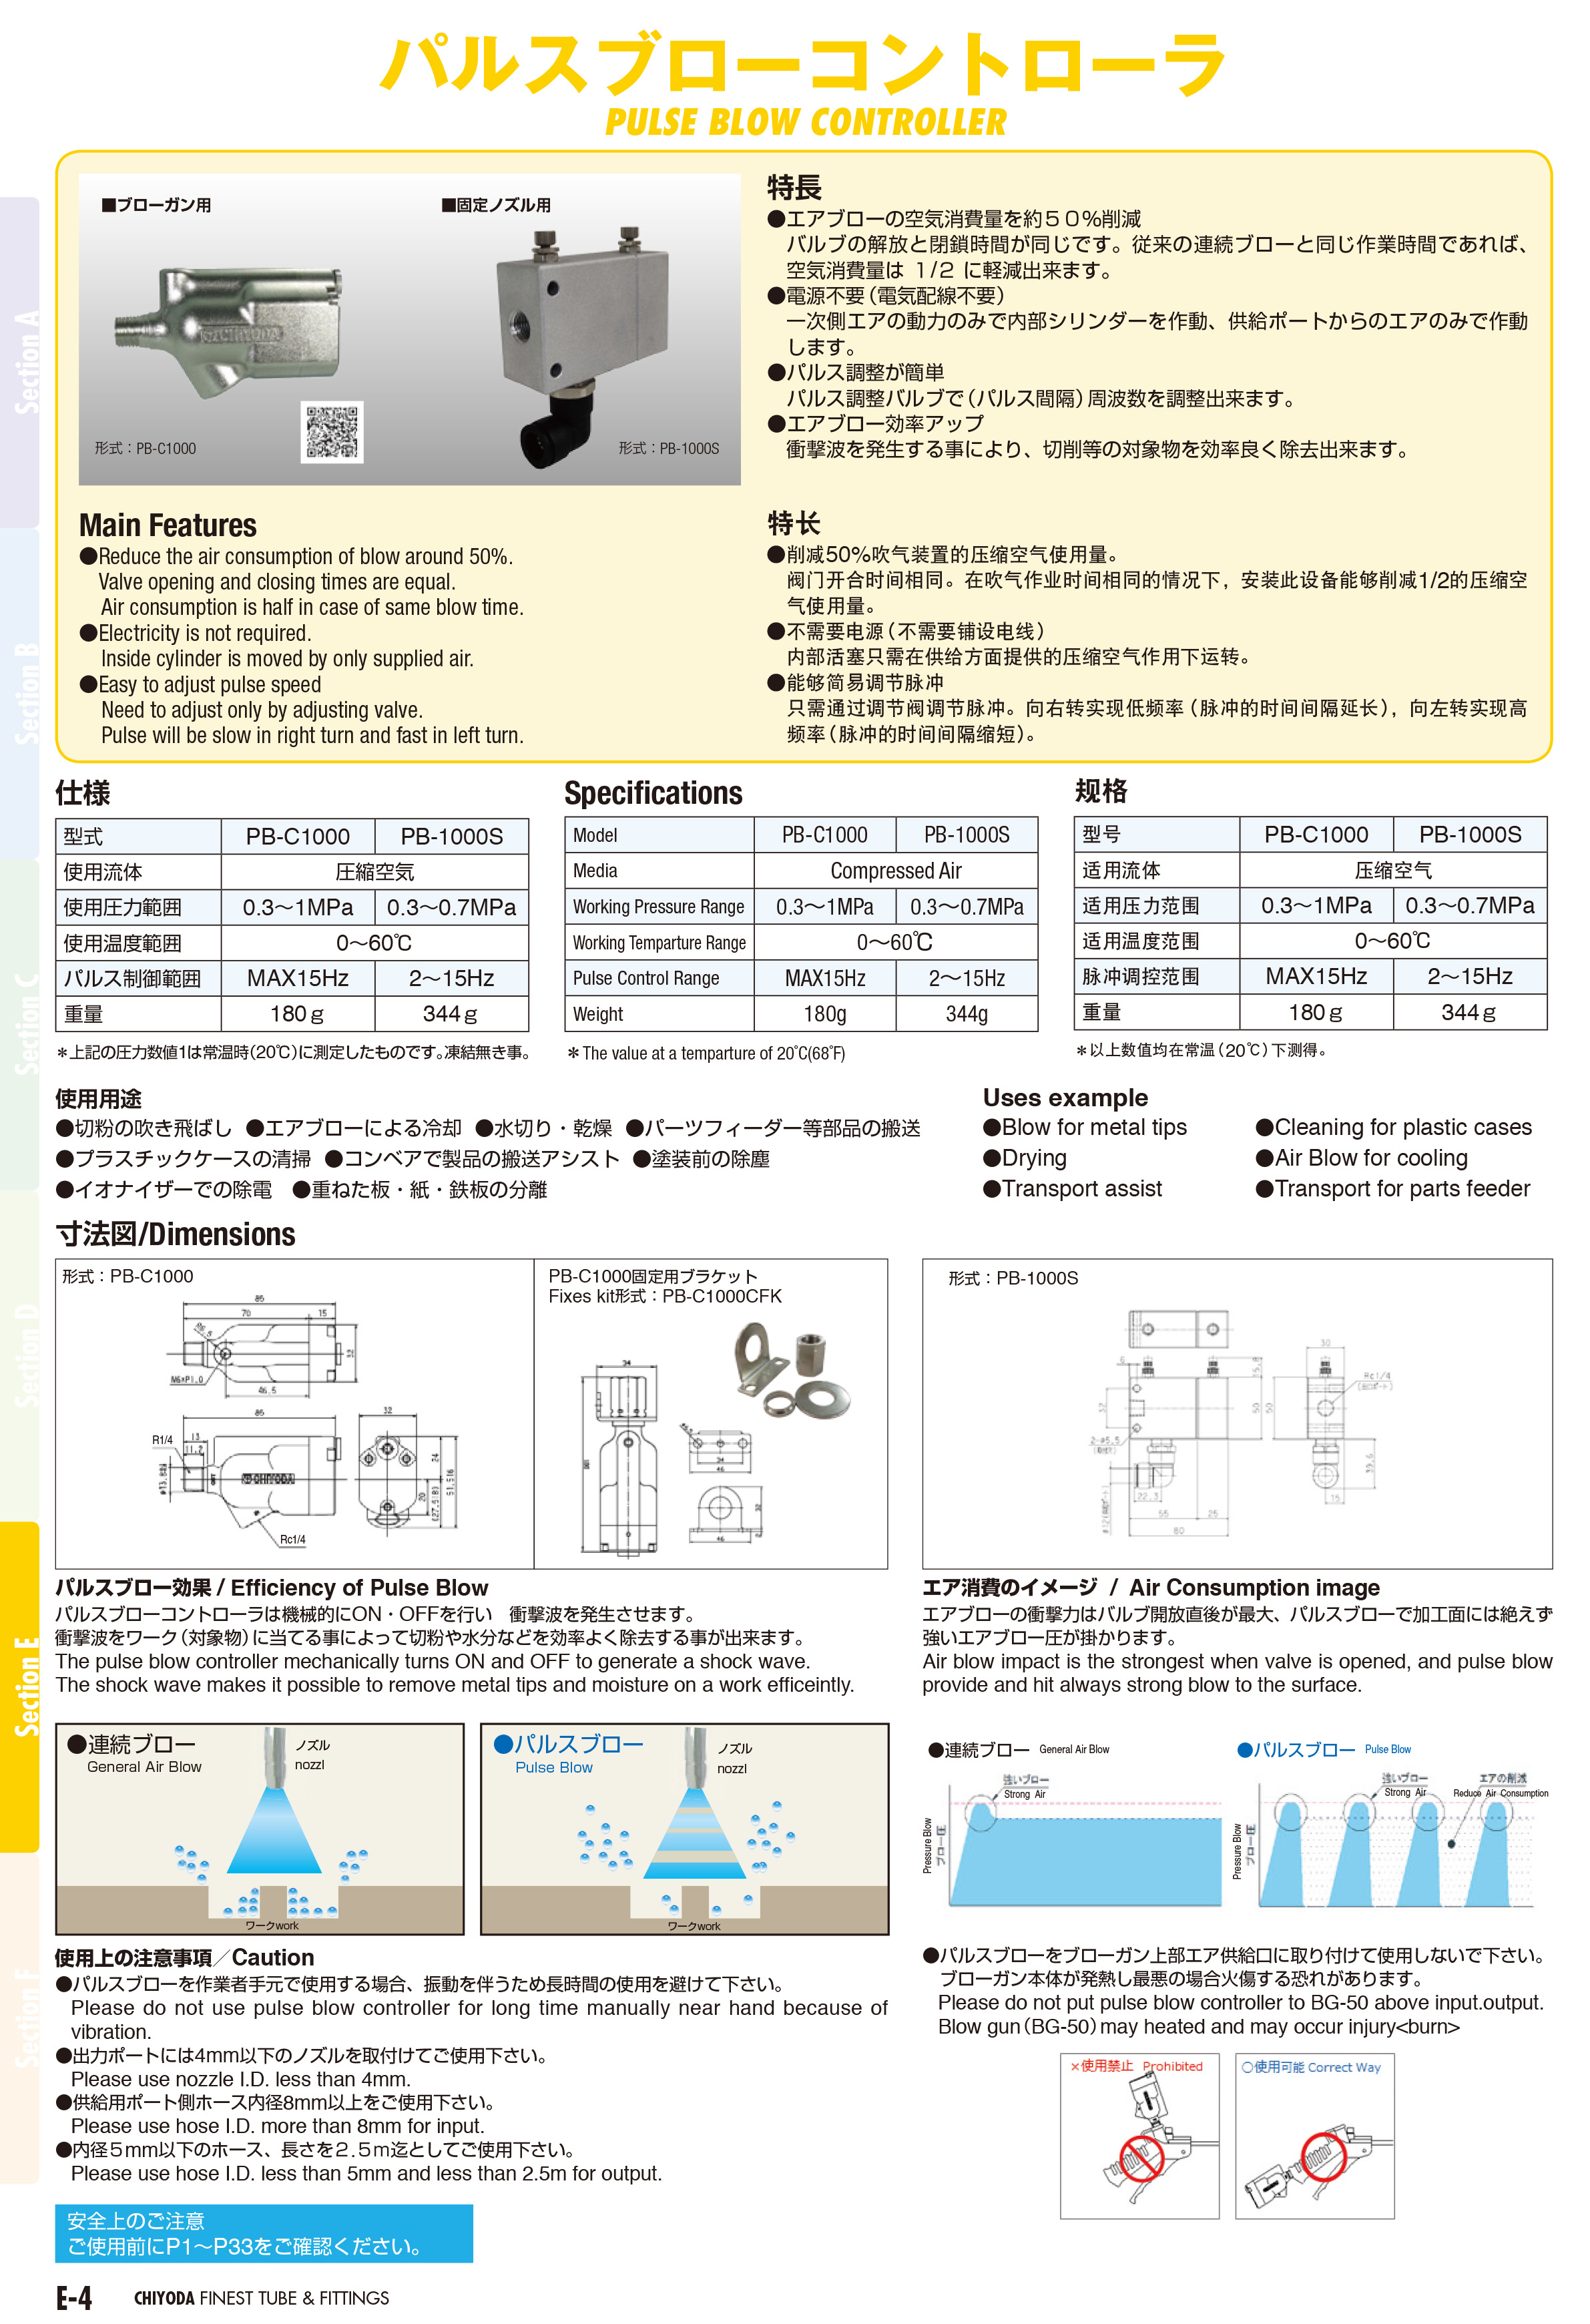 千代田通商 チヨダ パルスブローコントローラ PB-1000S 【125-9078